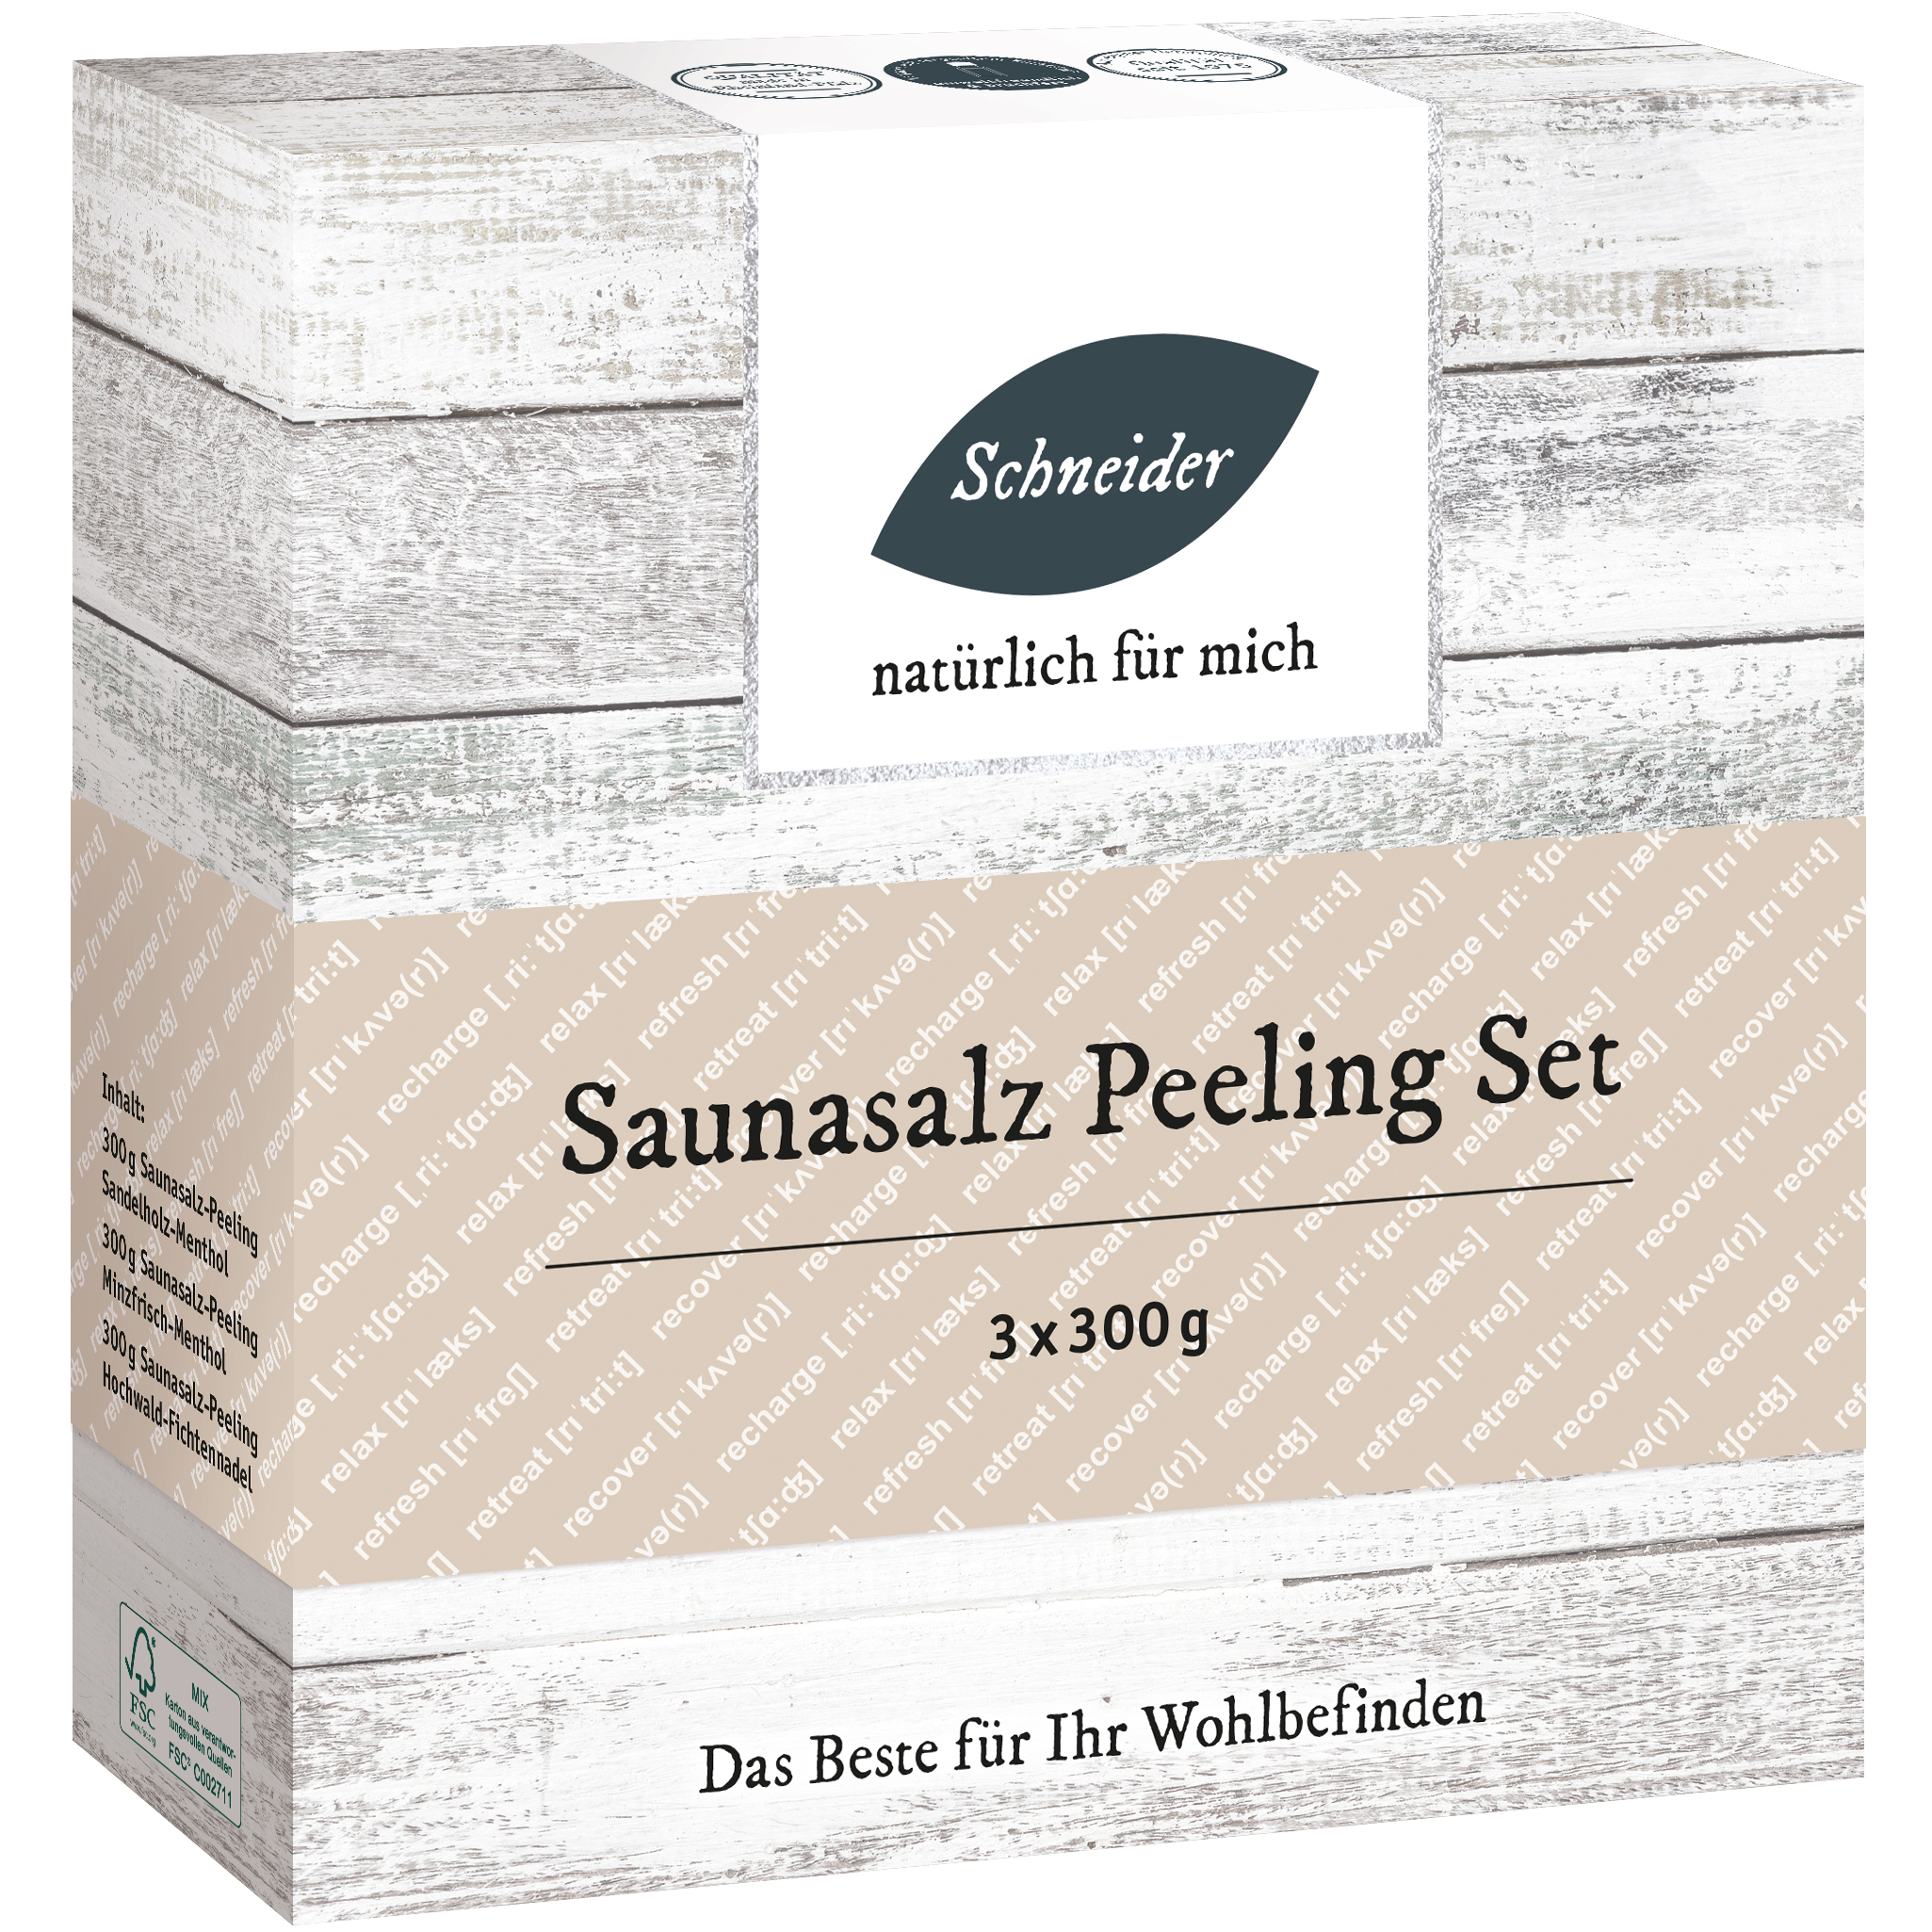 Saunasalz Peeling Set